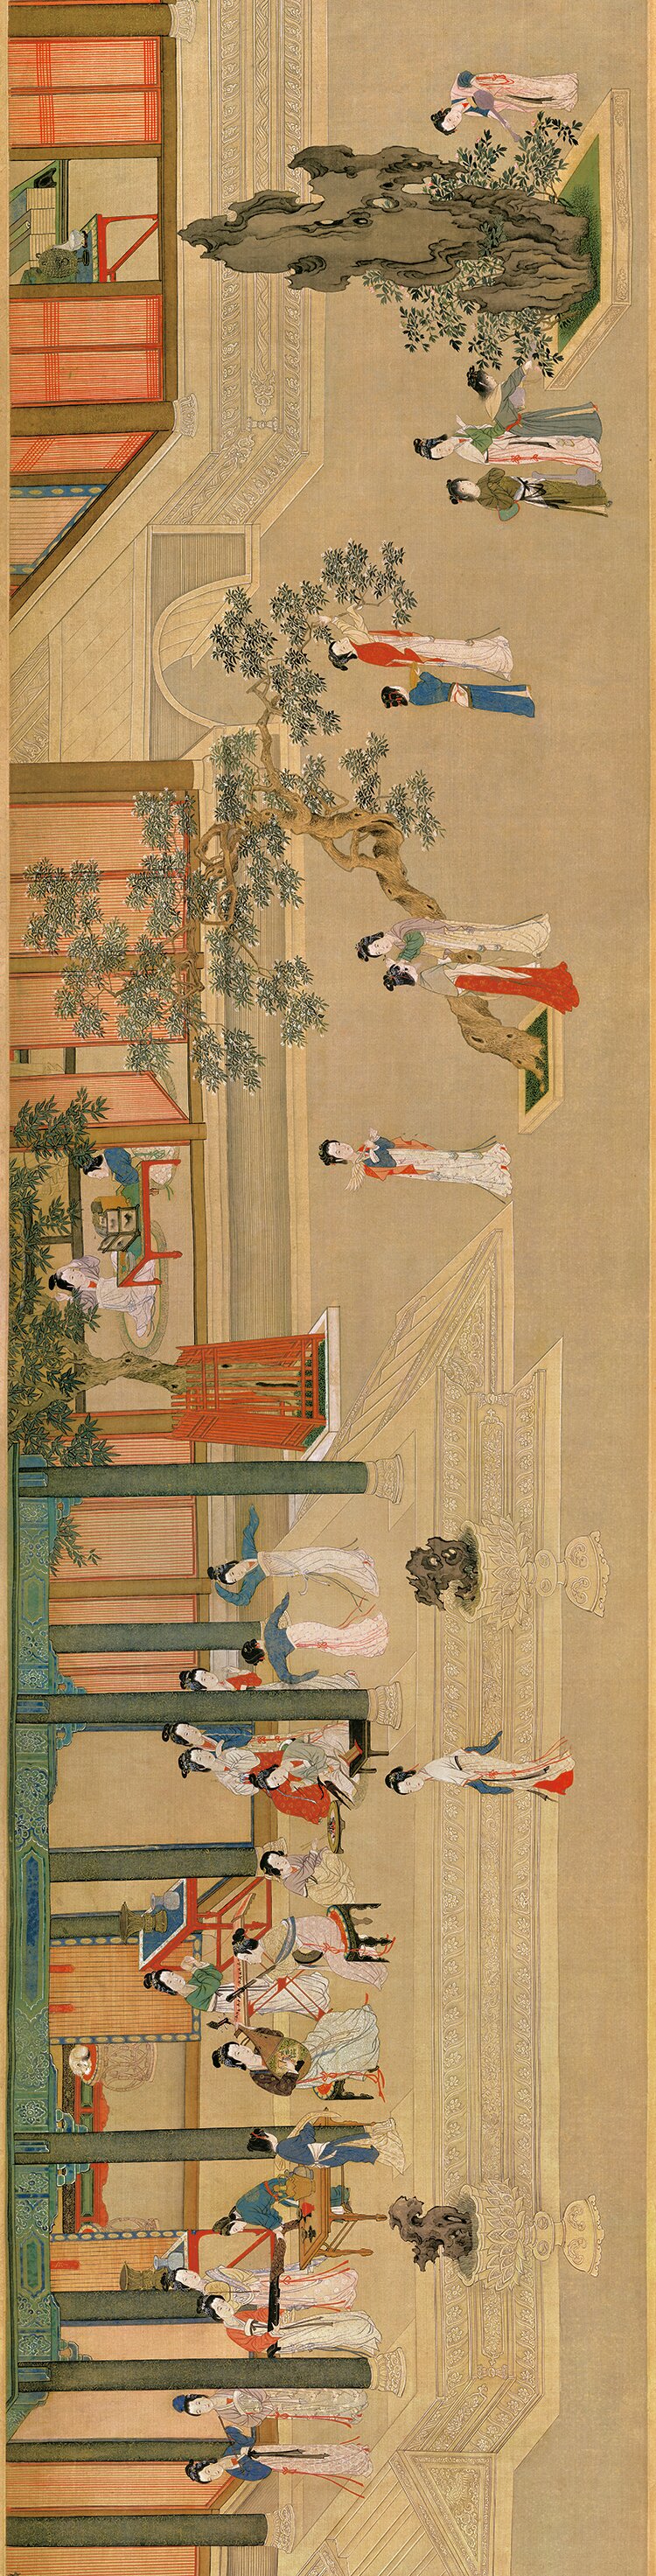 本幅以春日晨曦中的汉代宫廷为题,描绘後宫佳丽百态;其中,并包含有